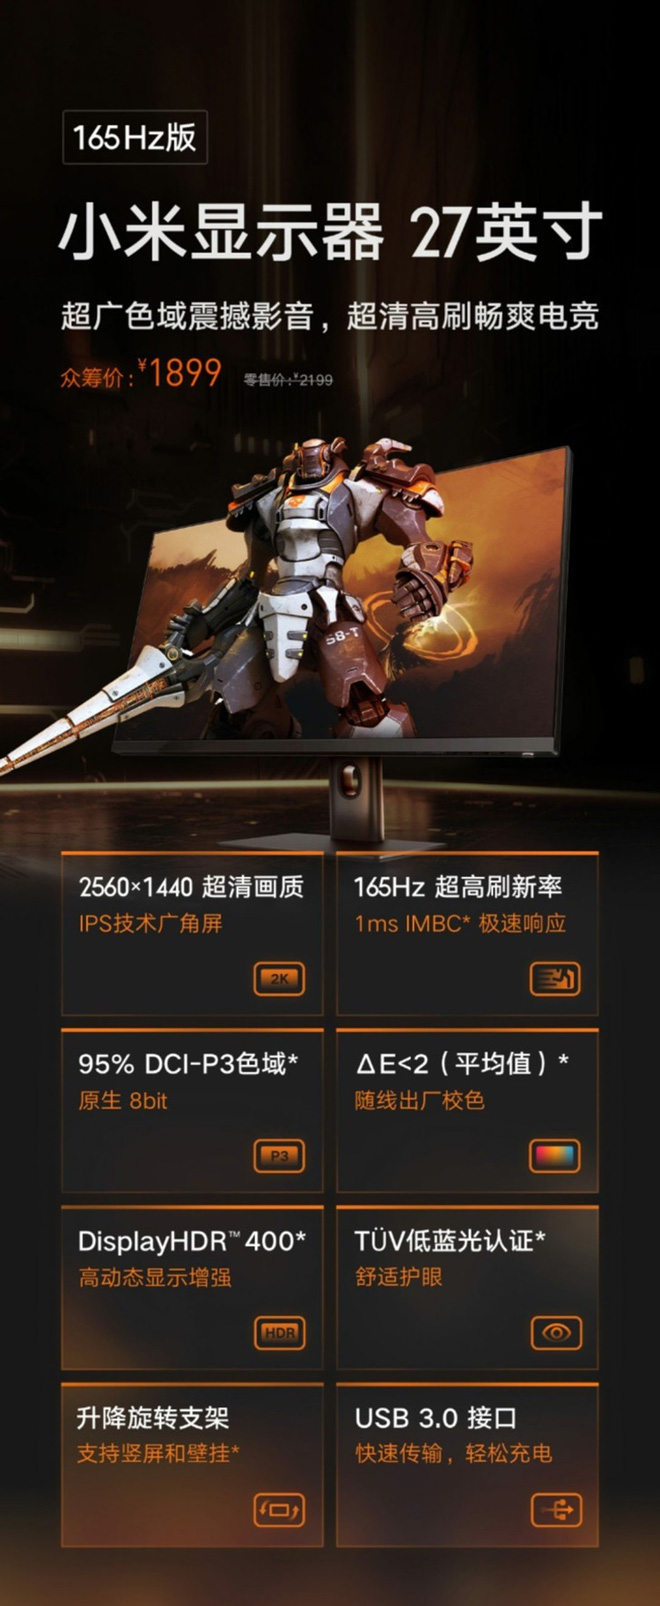 Xiaomi ra mắt màn hình gaming 27 inch: Độ phân giải 2K, tần số quét 165Hz, IPS, giá chỉ 6.2 triệu đồng - Ảnh 1.